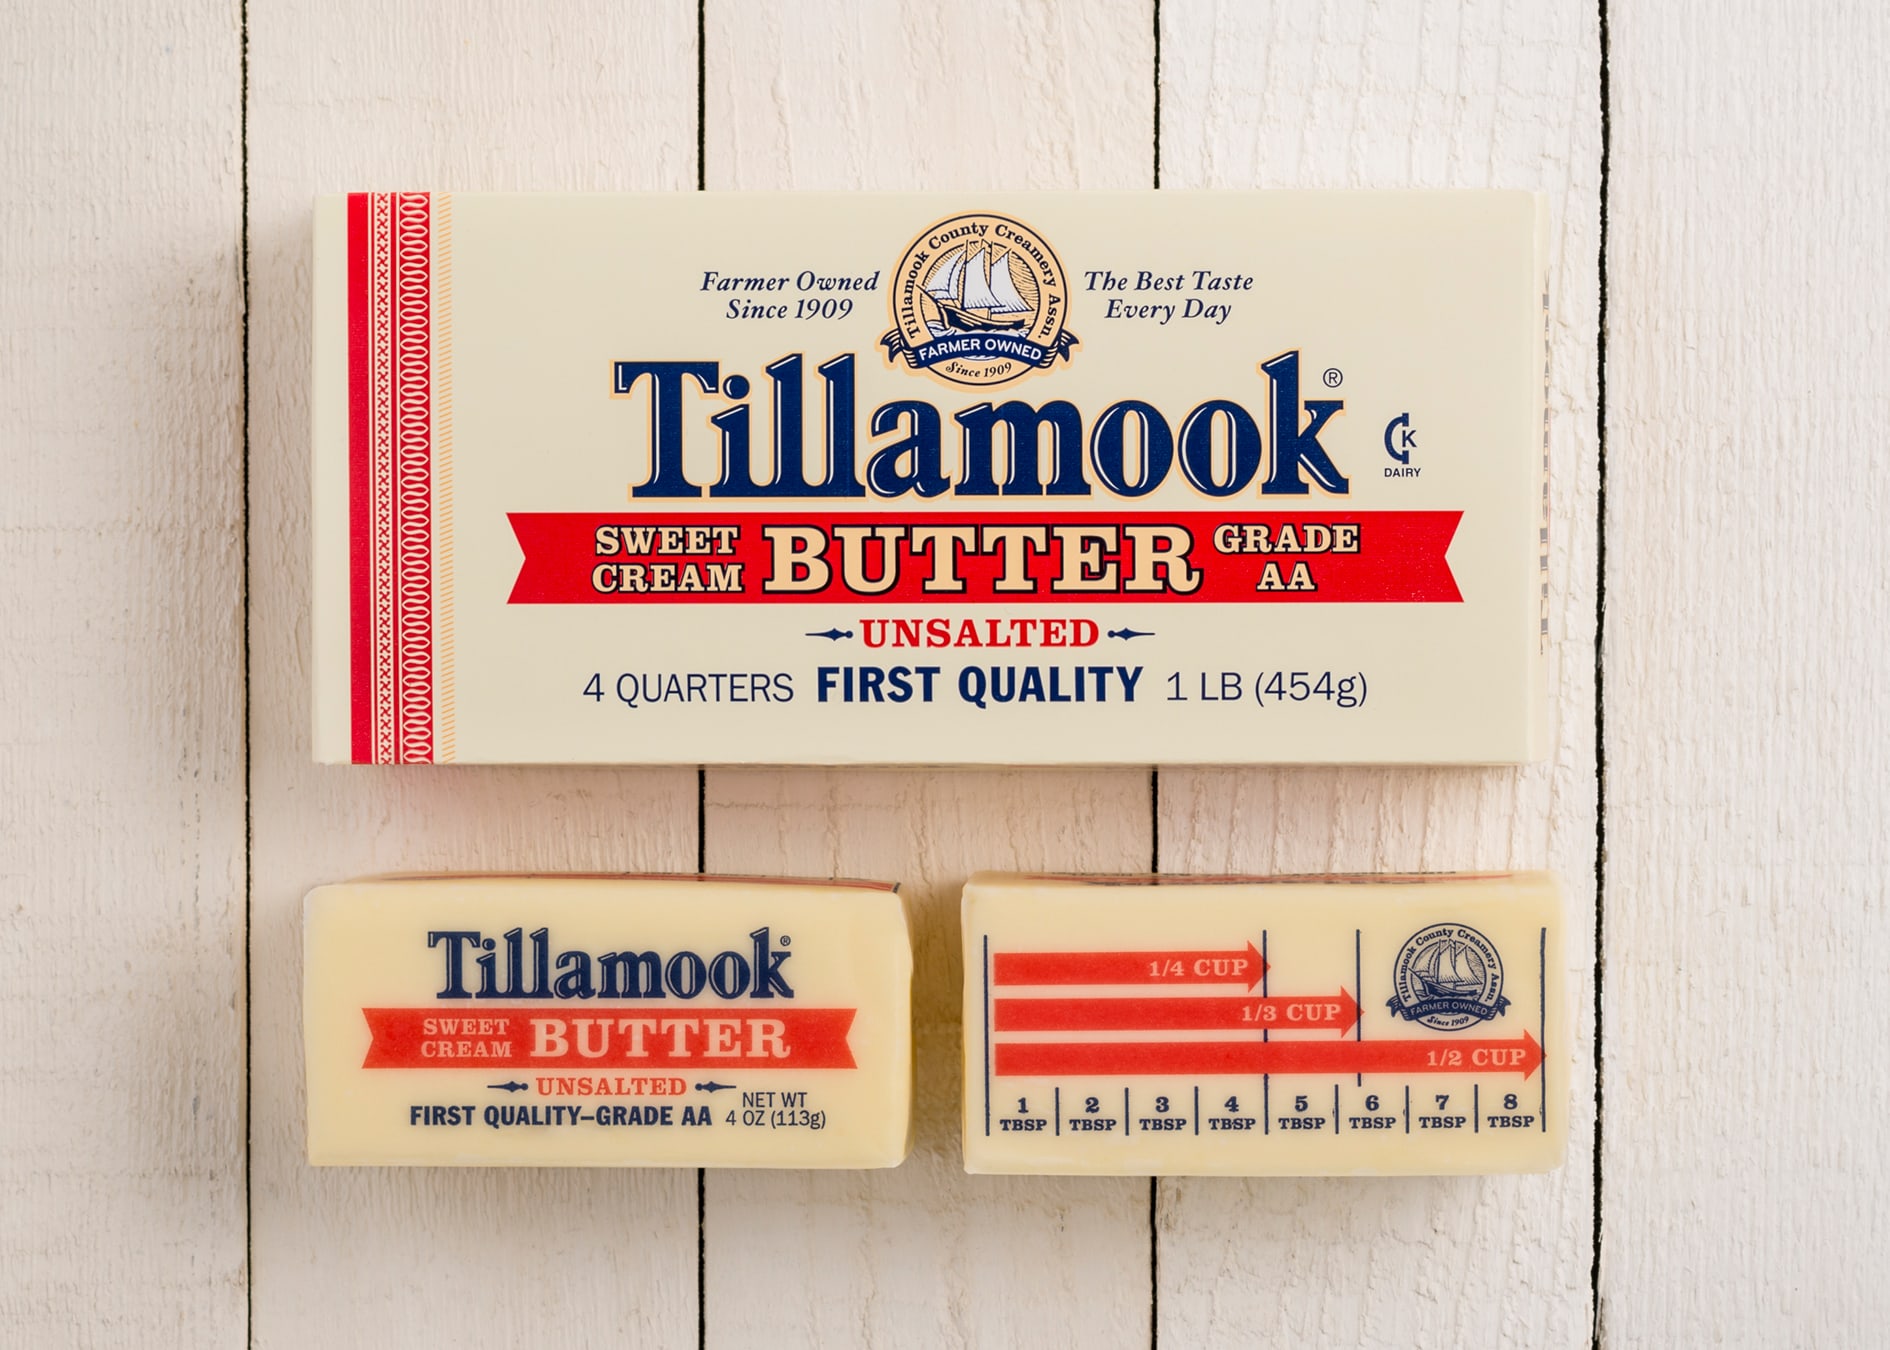 Tillamook butter package design